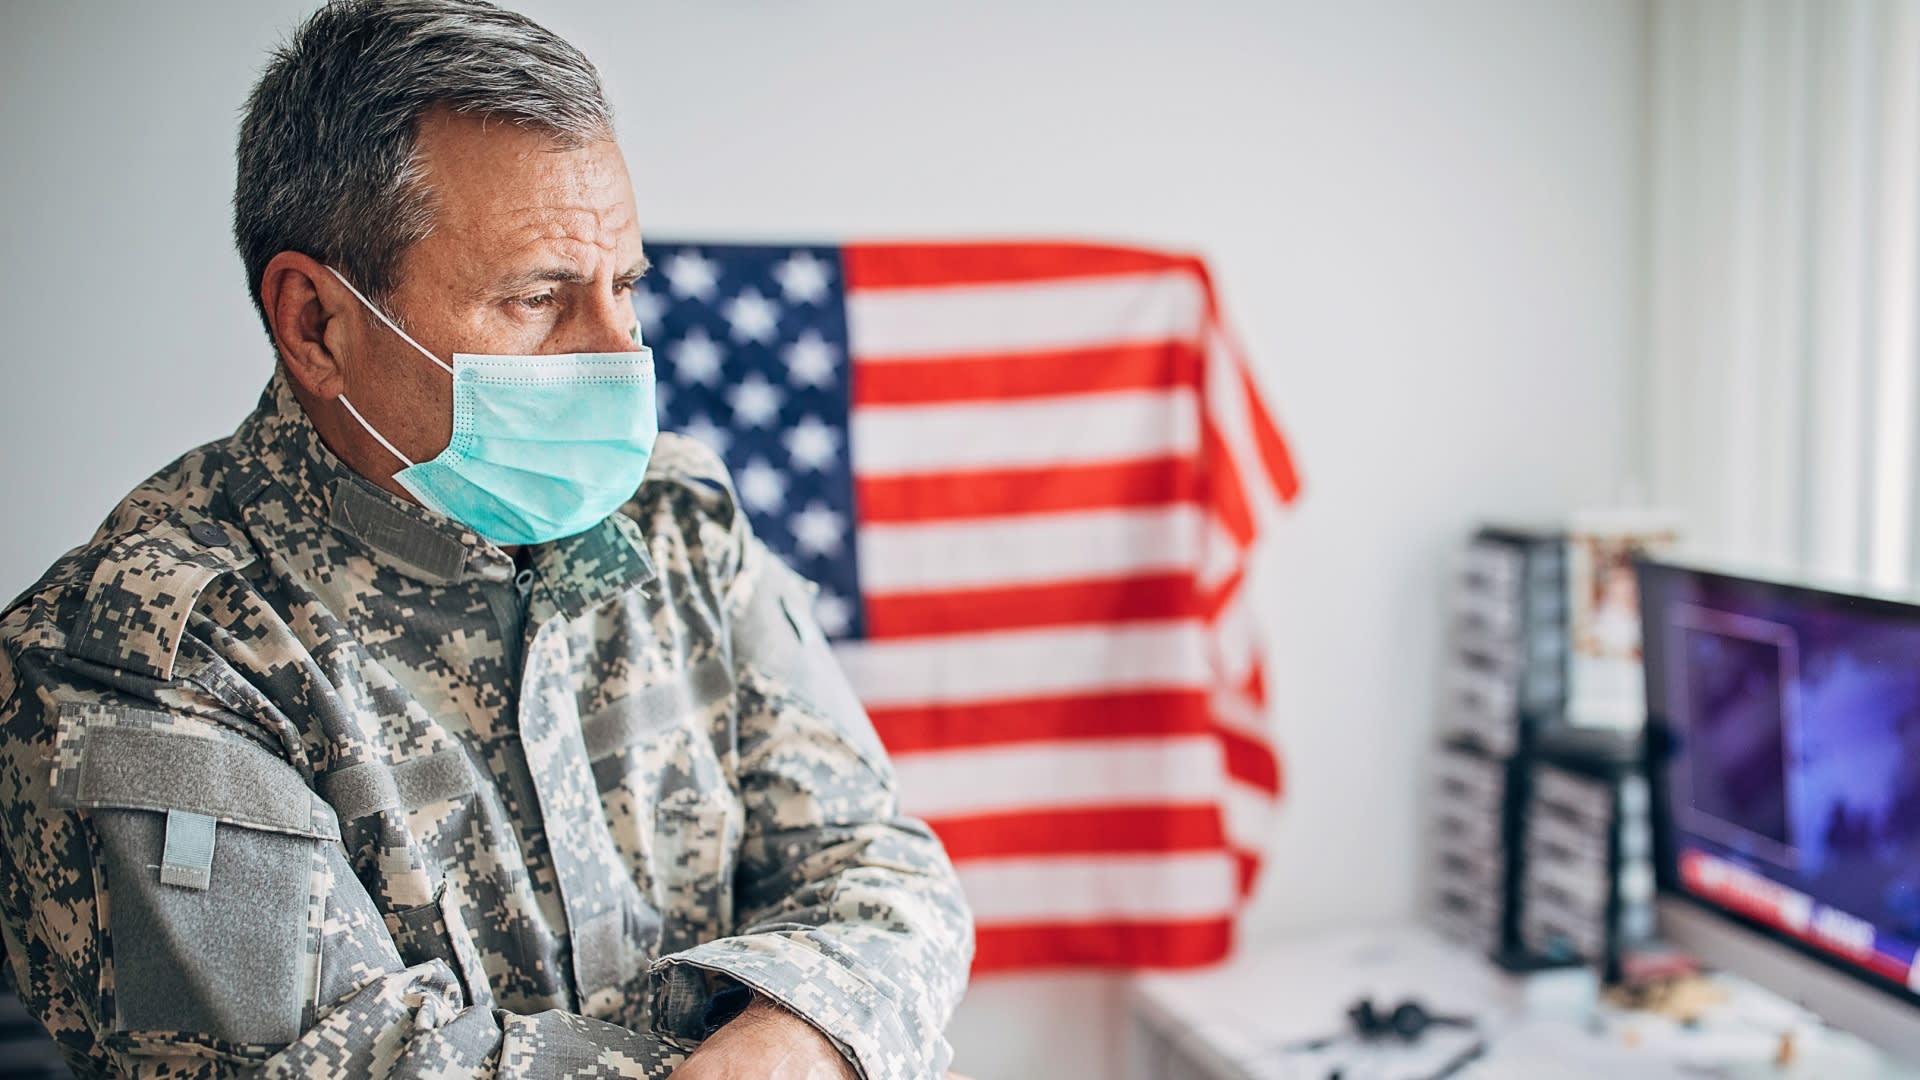 Zdravotnická služba Národní gardy Spojených států plní nejrůznější úkoly včetně repatriace zraněných vojáků ze zahraničí